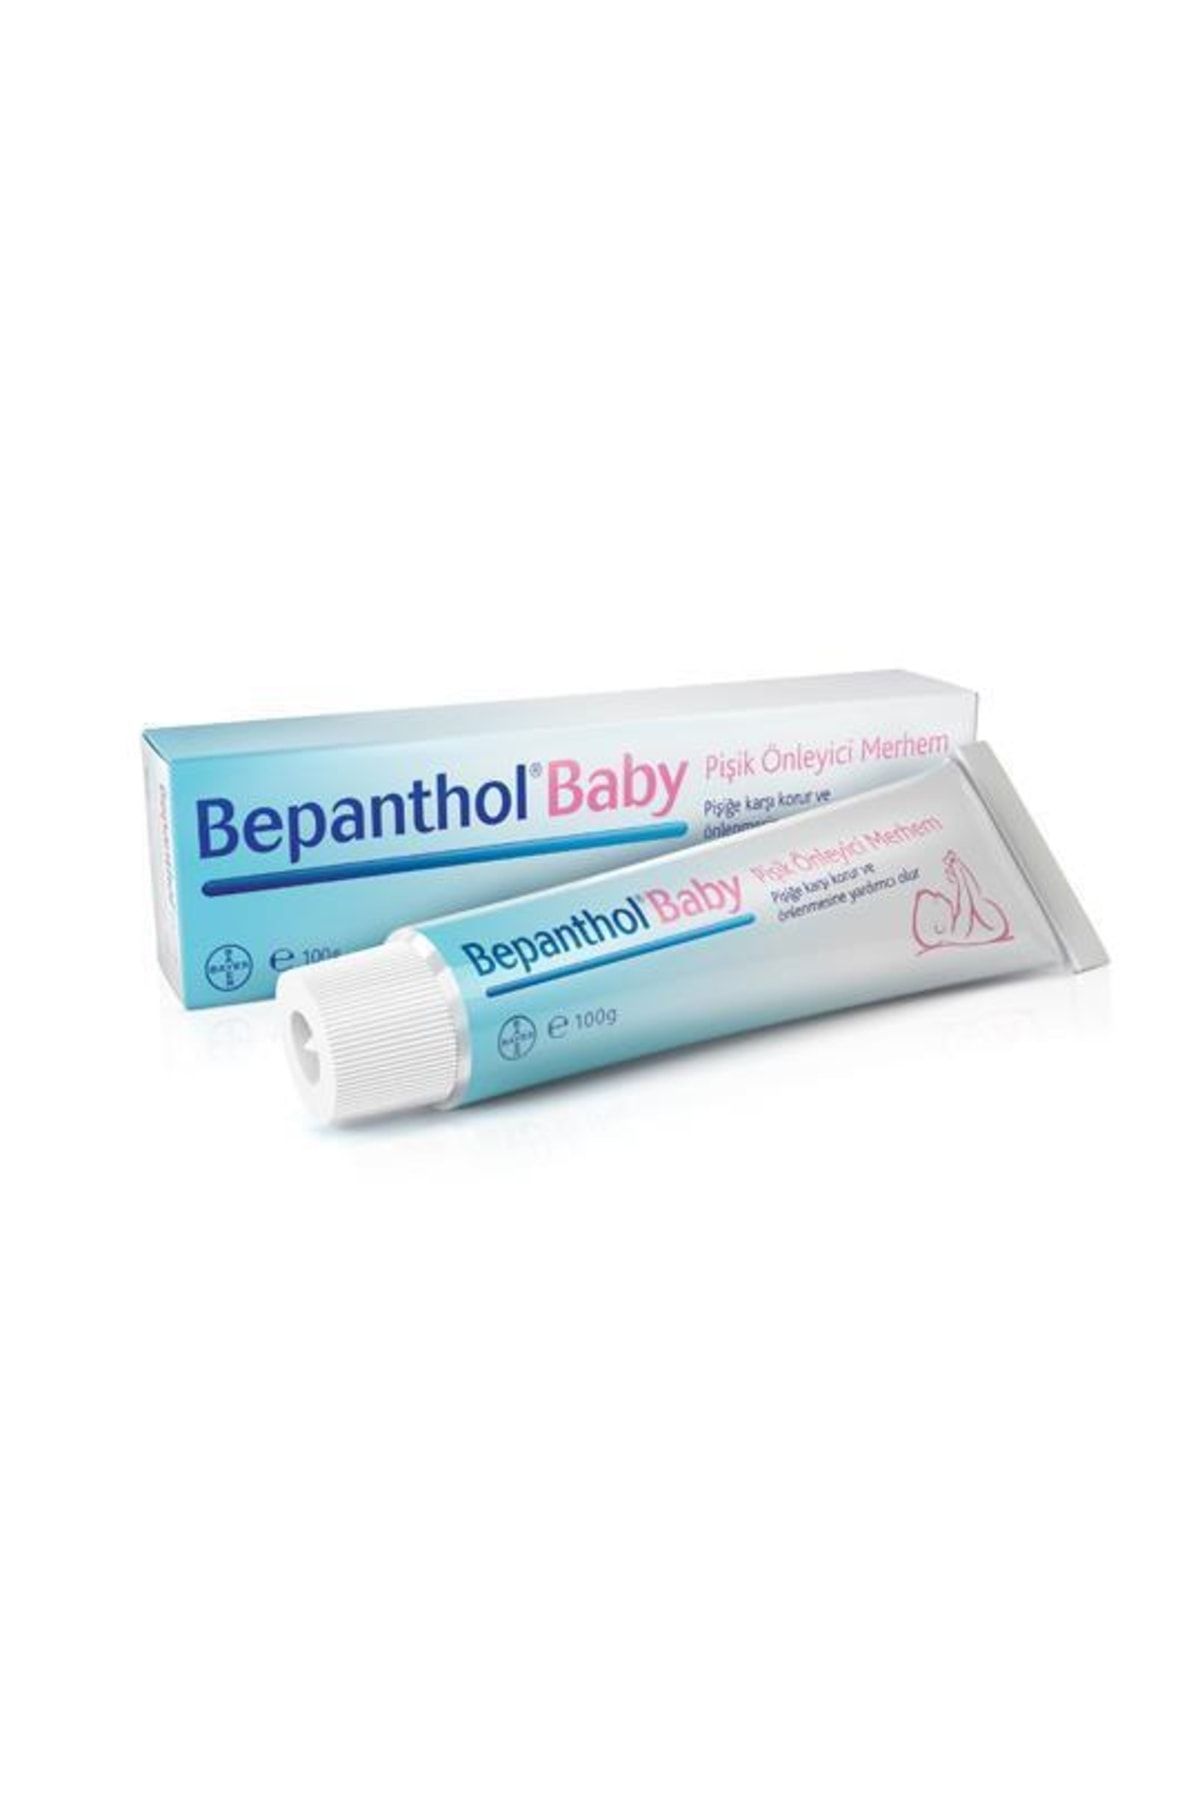 Genel Markalar Bepanthol Baby Pişik Önleyici Krem Merhem 100gr